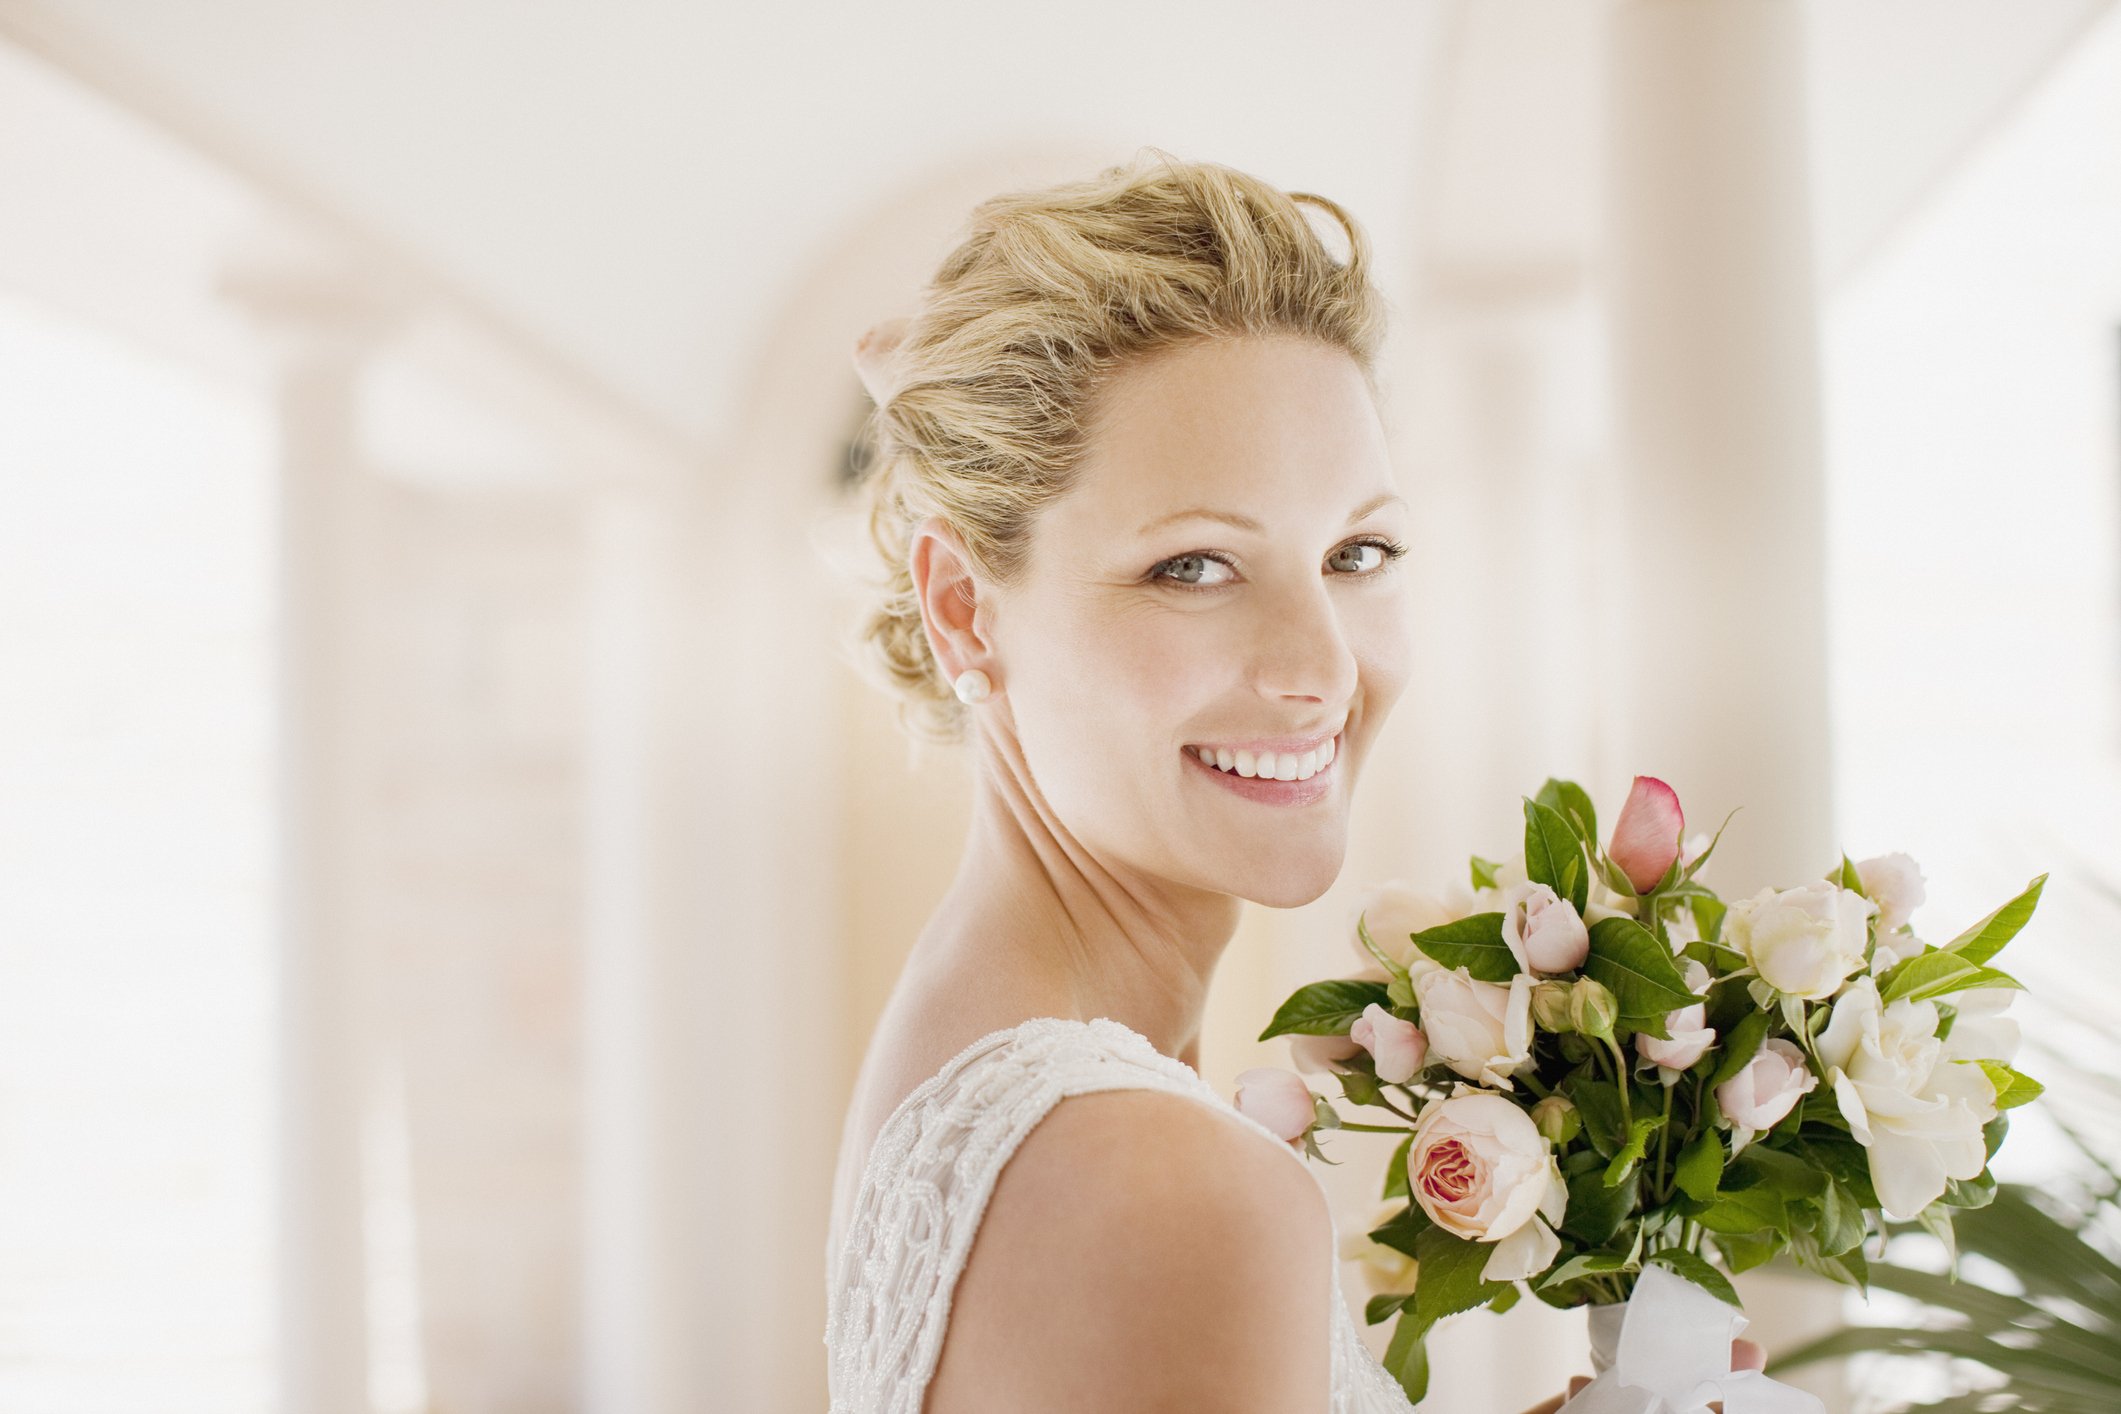 Braut, die mit einem Blumenstrauß lächelt. | Quelle: Getty Images